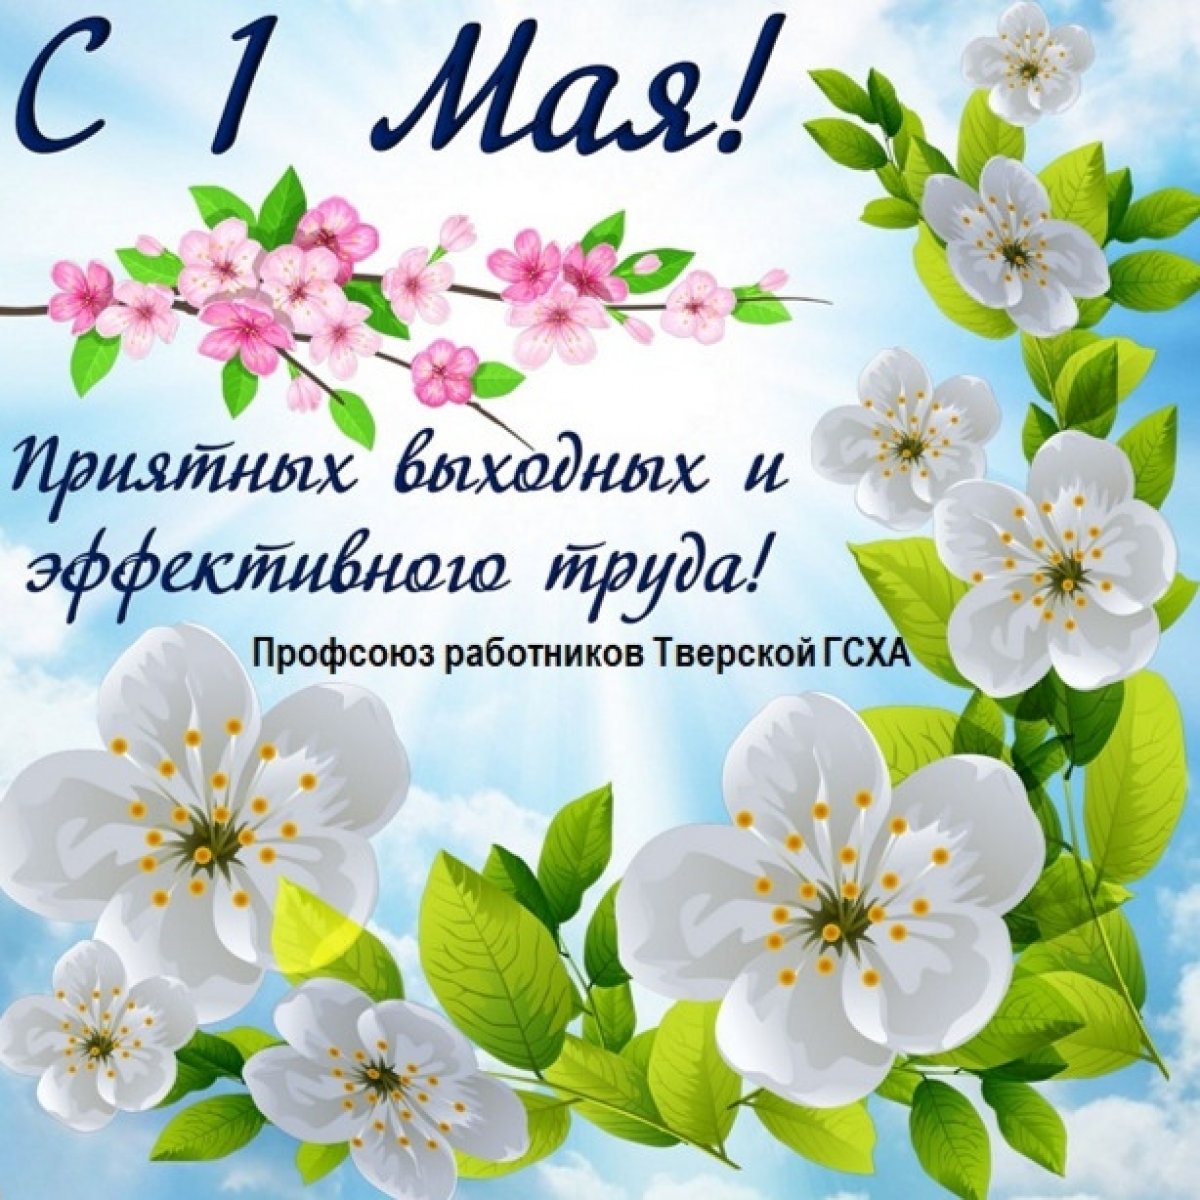 Профсоюз работников Тверской ГСХА поздравляет всех с наступающим праздником Мира и Труда и приглашает на праздничное первомайское шествие!